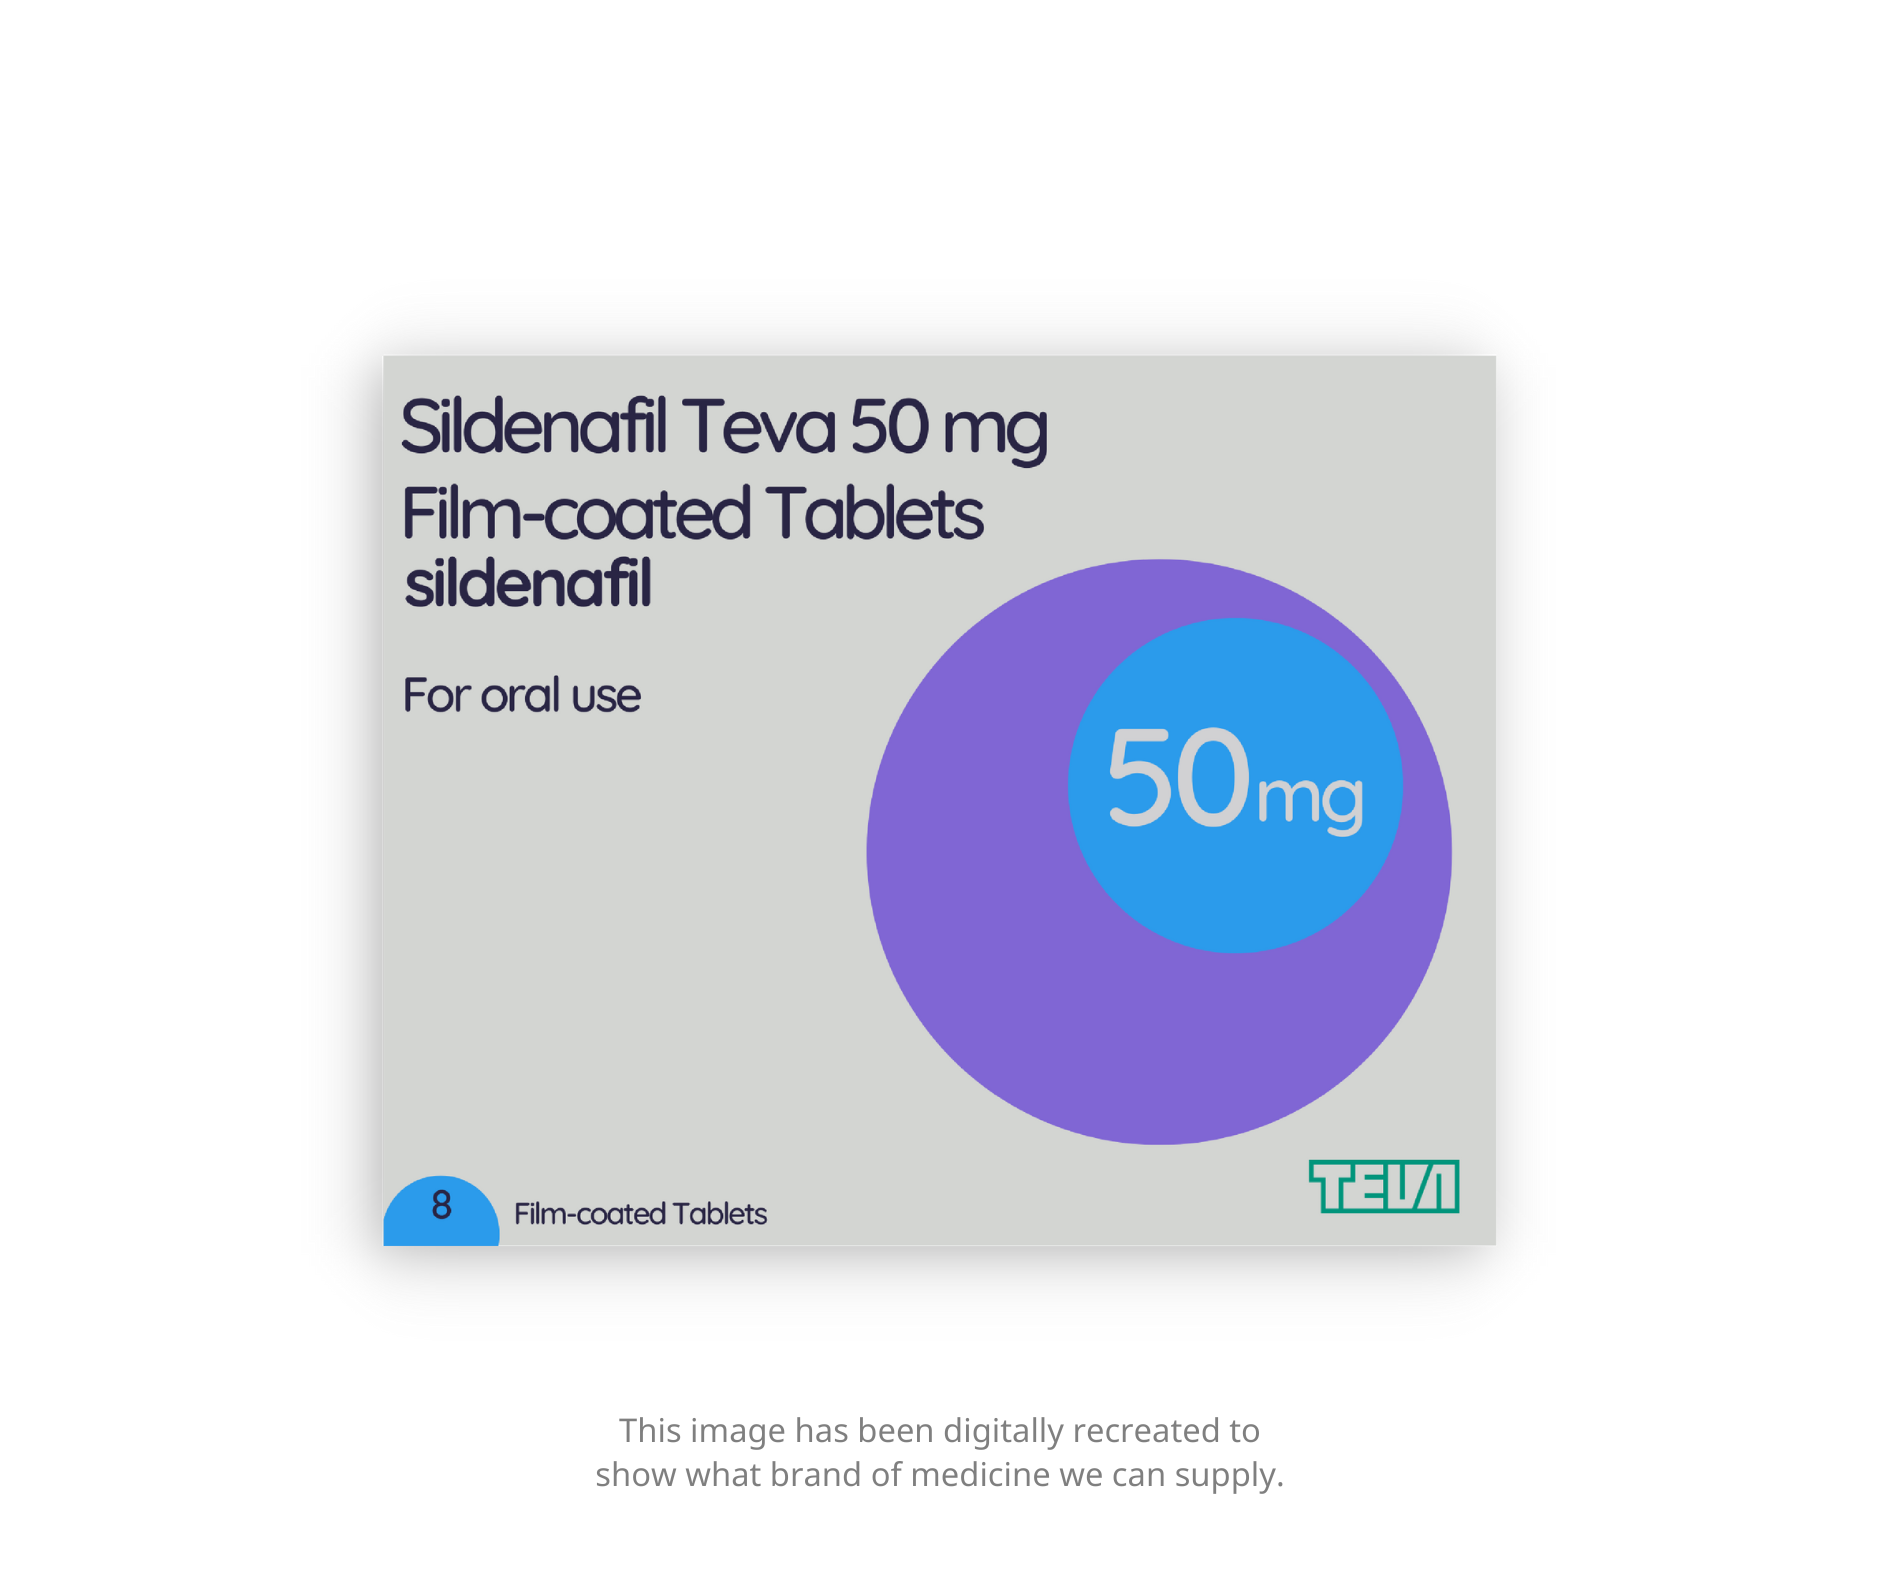 Sildenafil - Teva - 50mg tablets